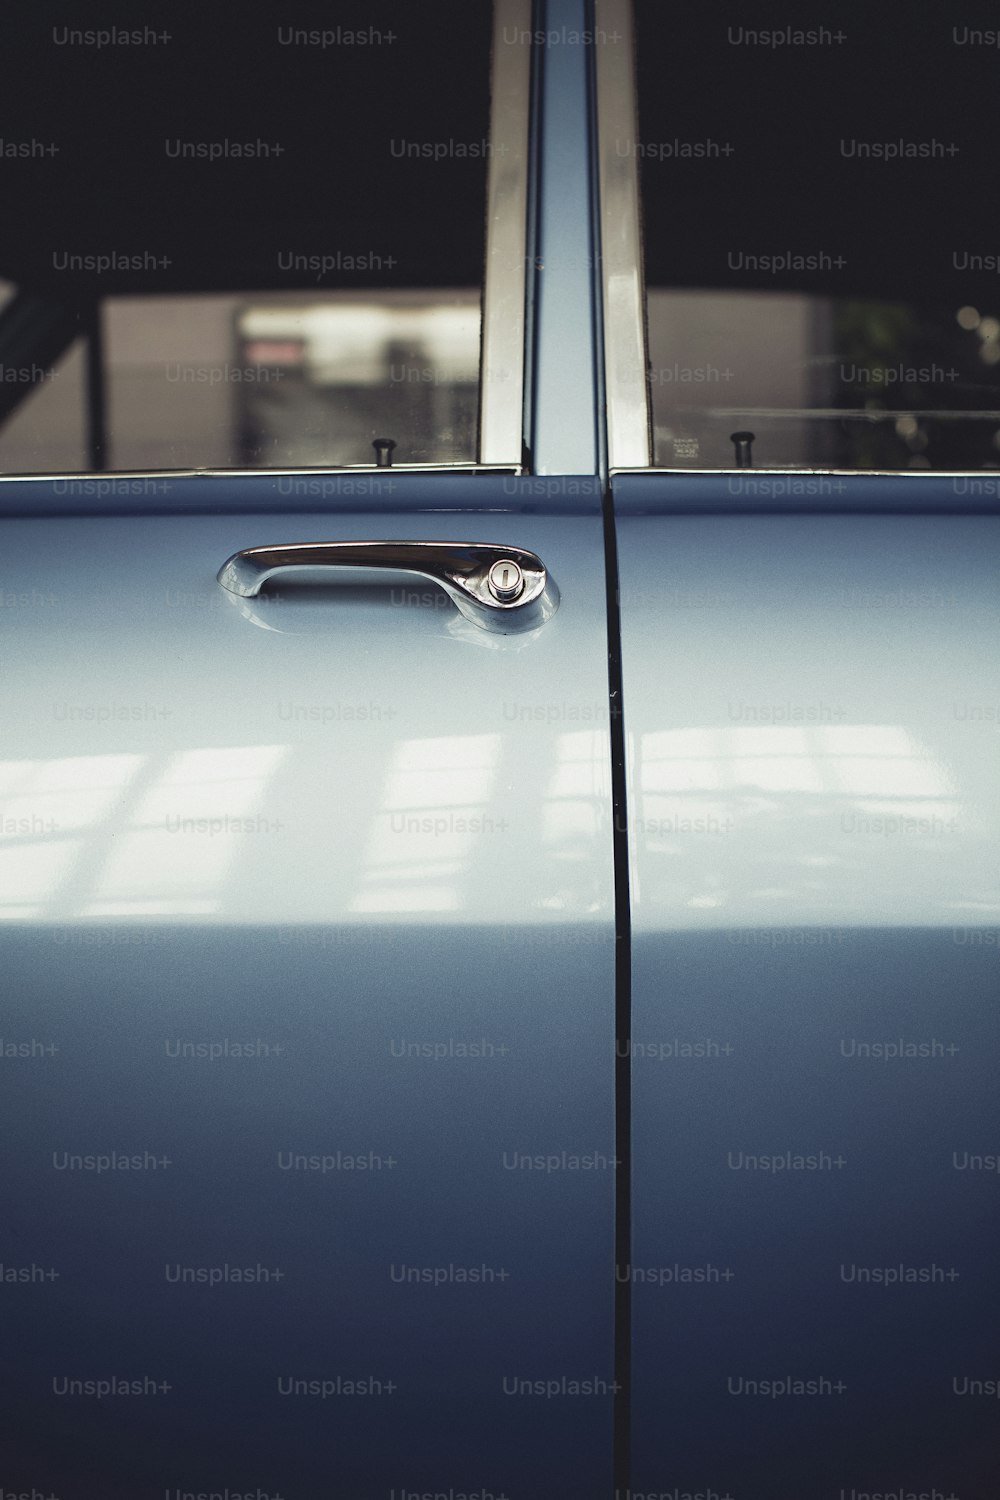 um close up de uma maçaneta de porta em um carro azul